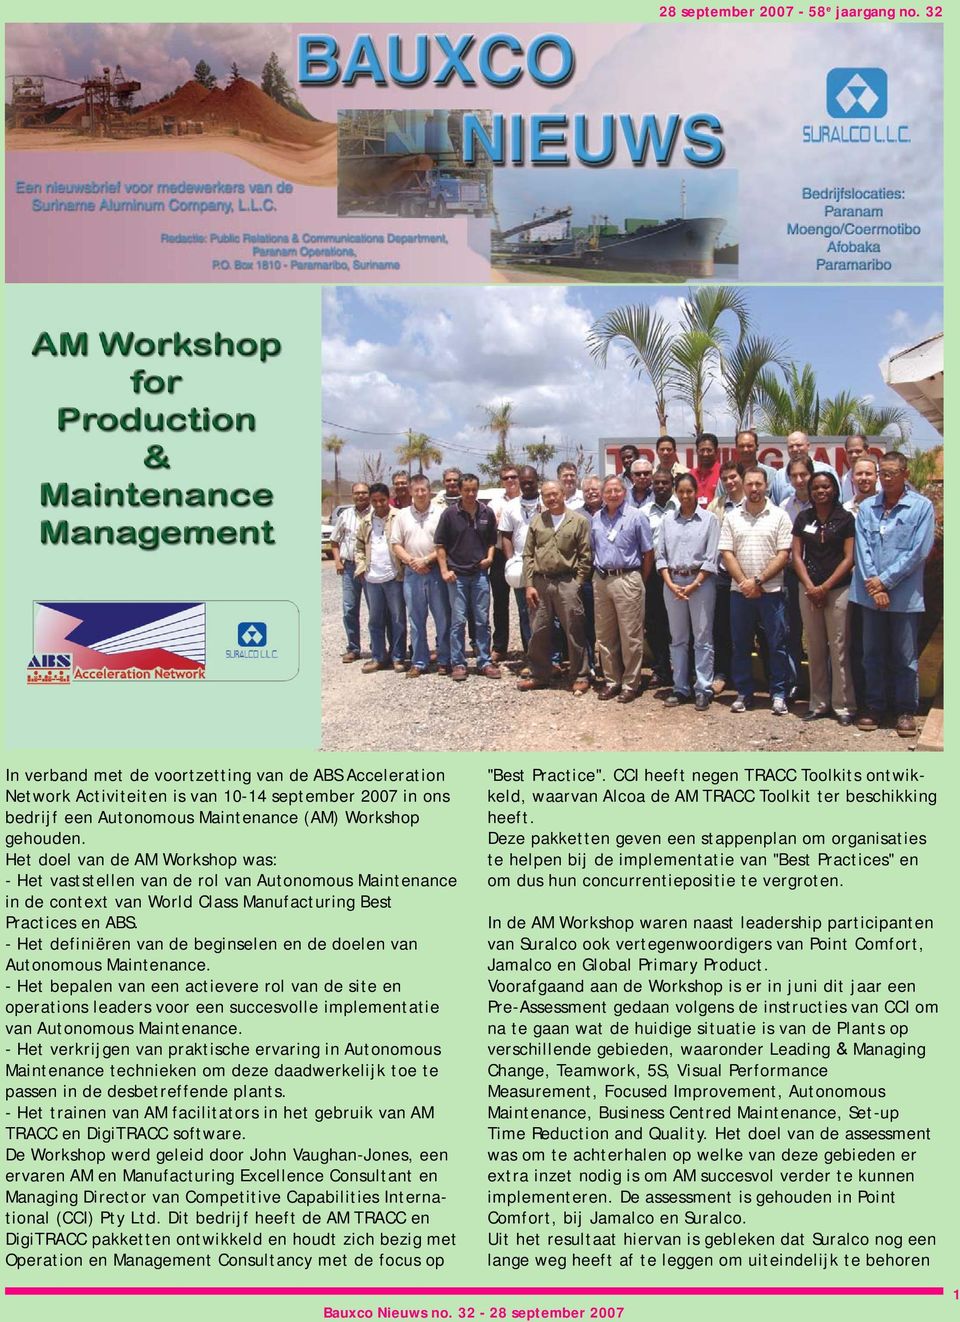 Het doel van de AM Workshop was: - Het vaststellen van de rol van Autonomous Maintenance in de context van World Class Manufacturing Best Practices en ABS.